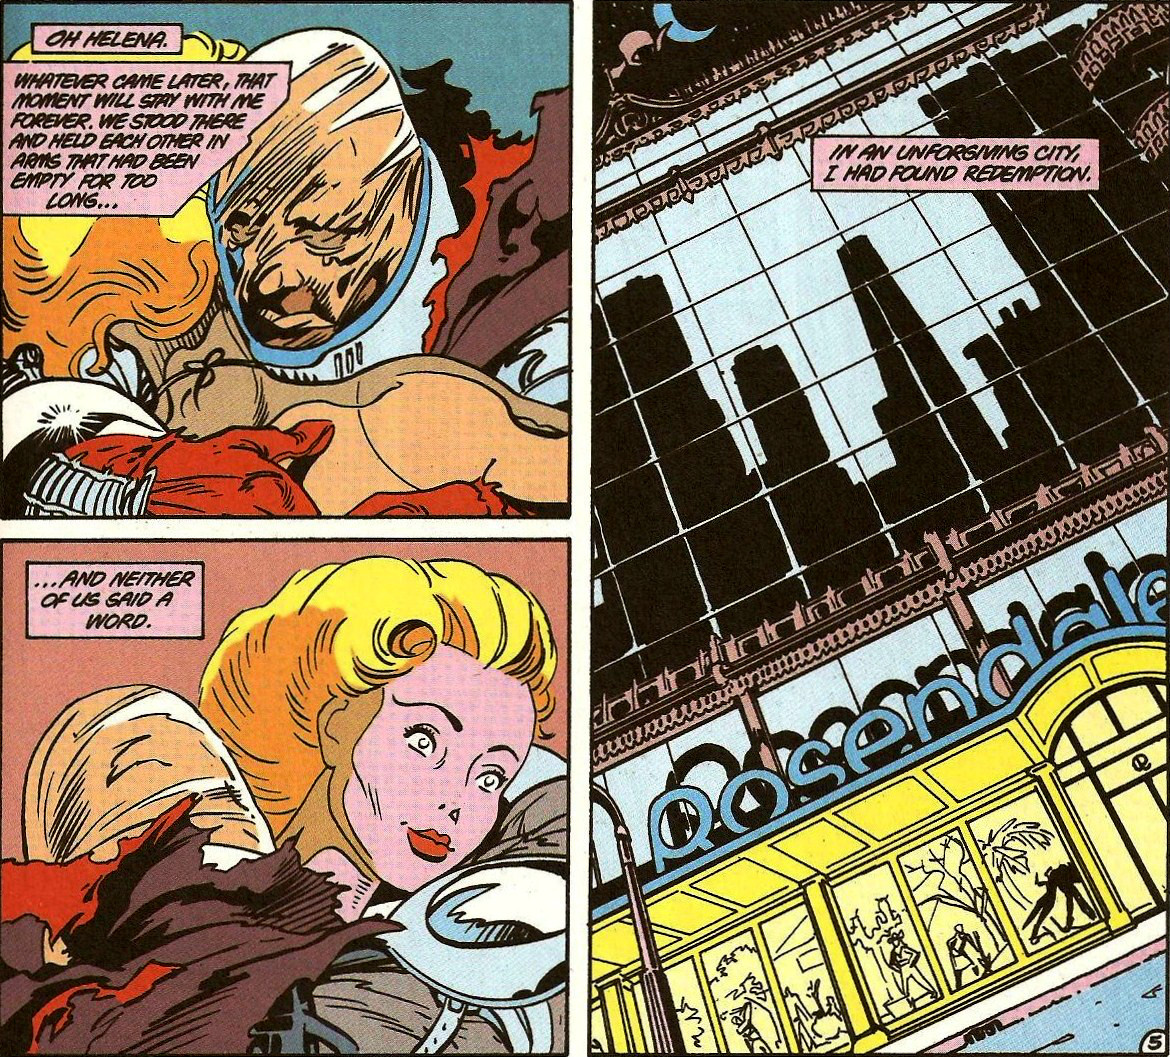 From Batman Annual (Vol. 1) #11 (1987)